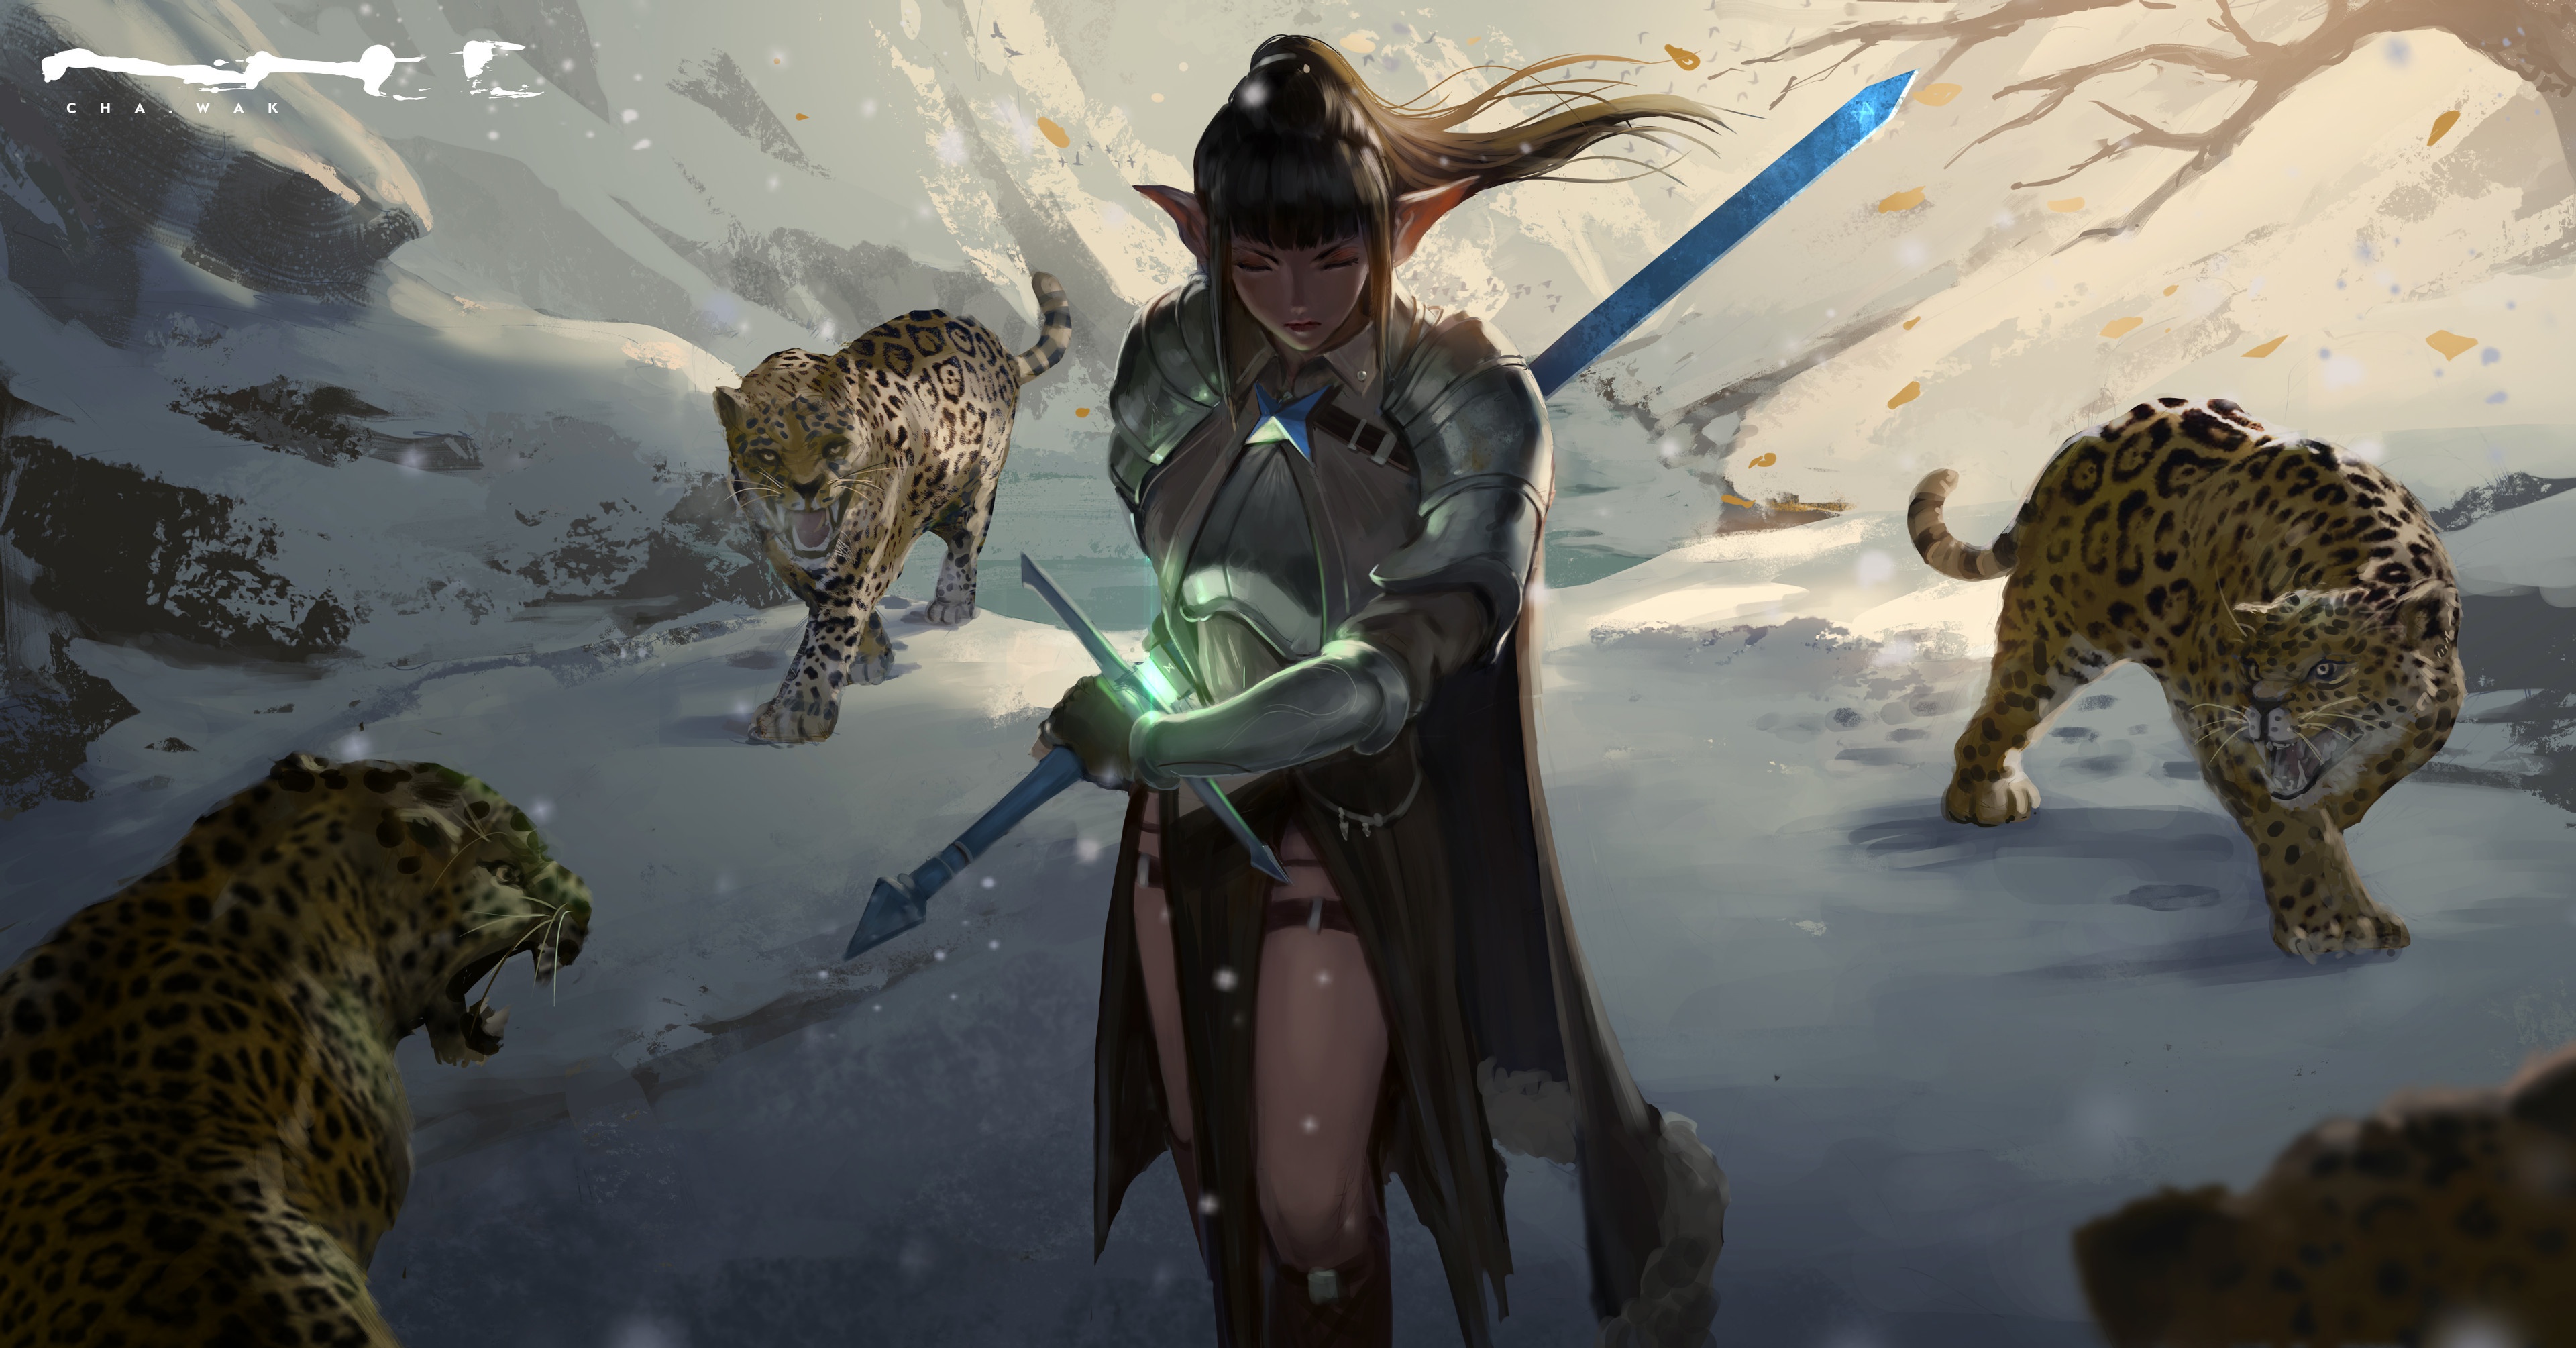 Fantasy Women Warrior HD Wallpaper by Cha Wak